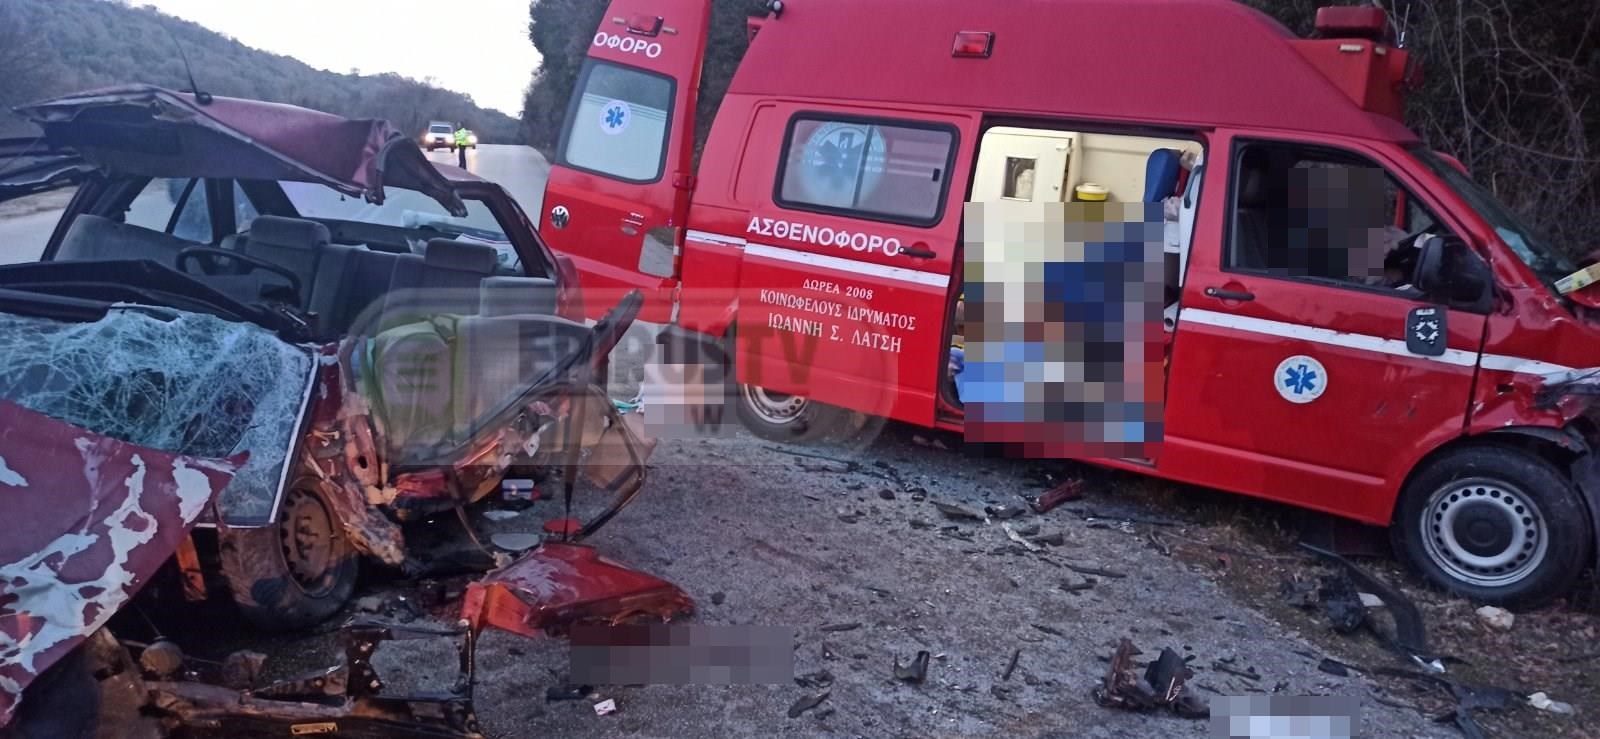 Τραγωδία στα Ιωάννινα: Σύγκρουση αυτοκινήτου με ασθενοφόρο – Δύο νεκροί (pics&vid)